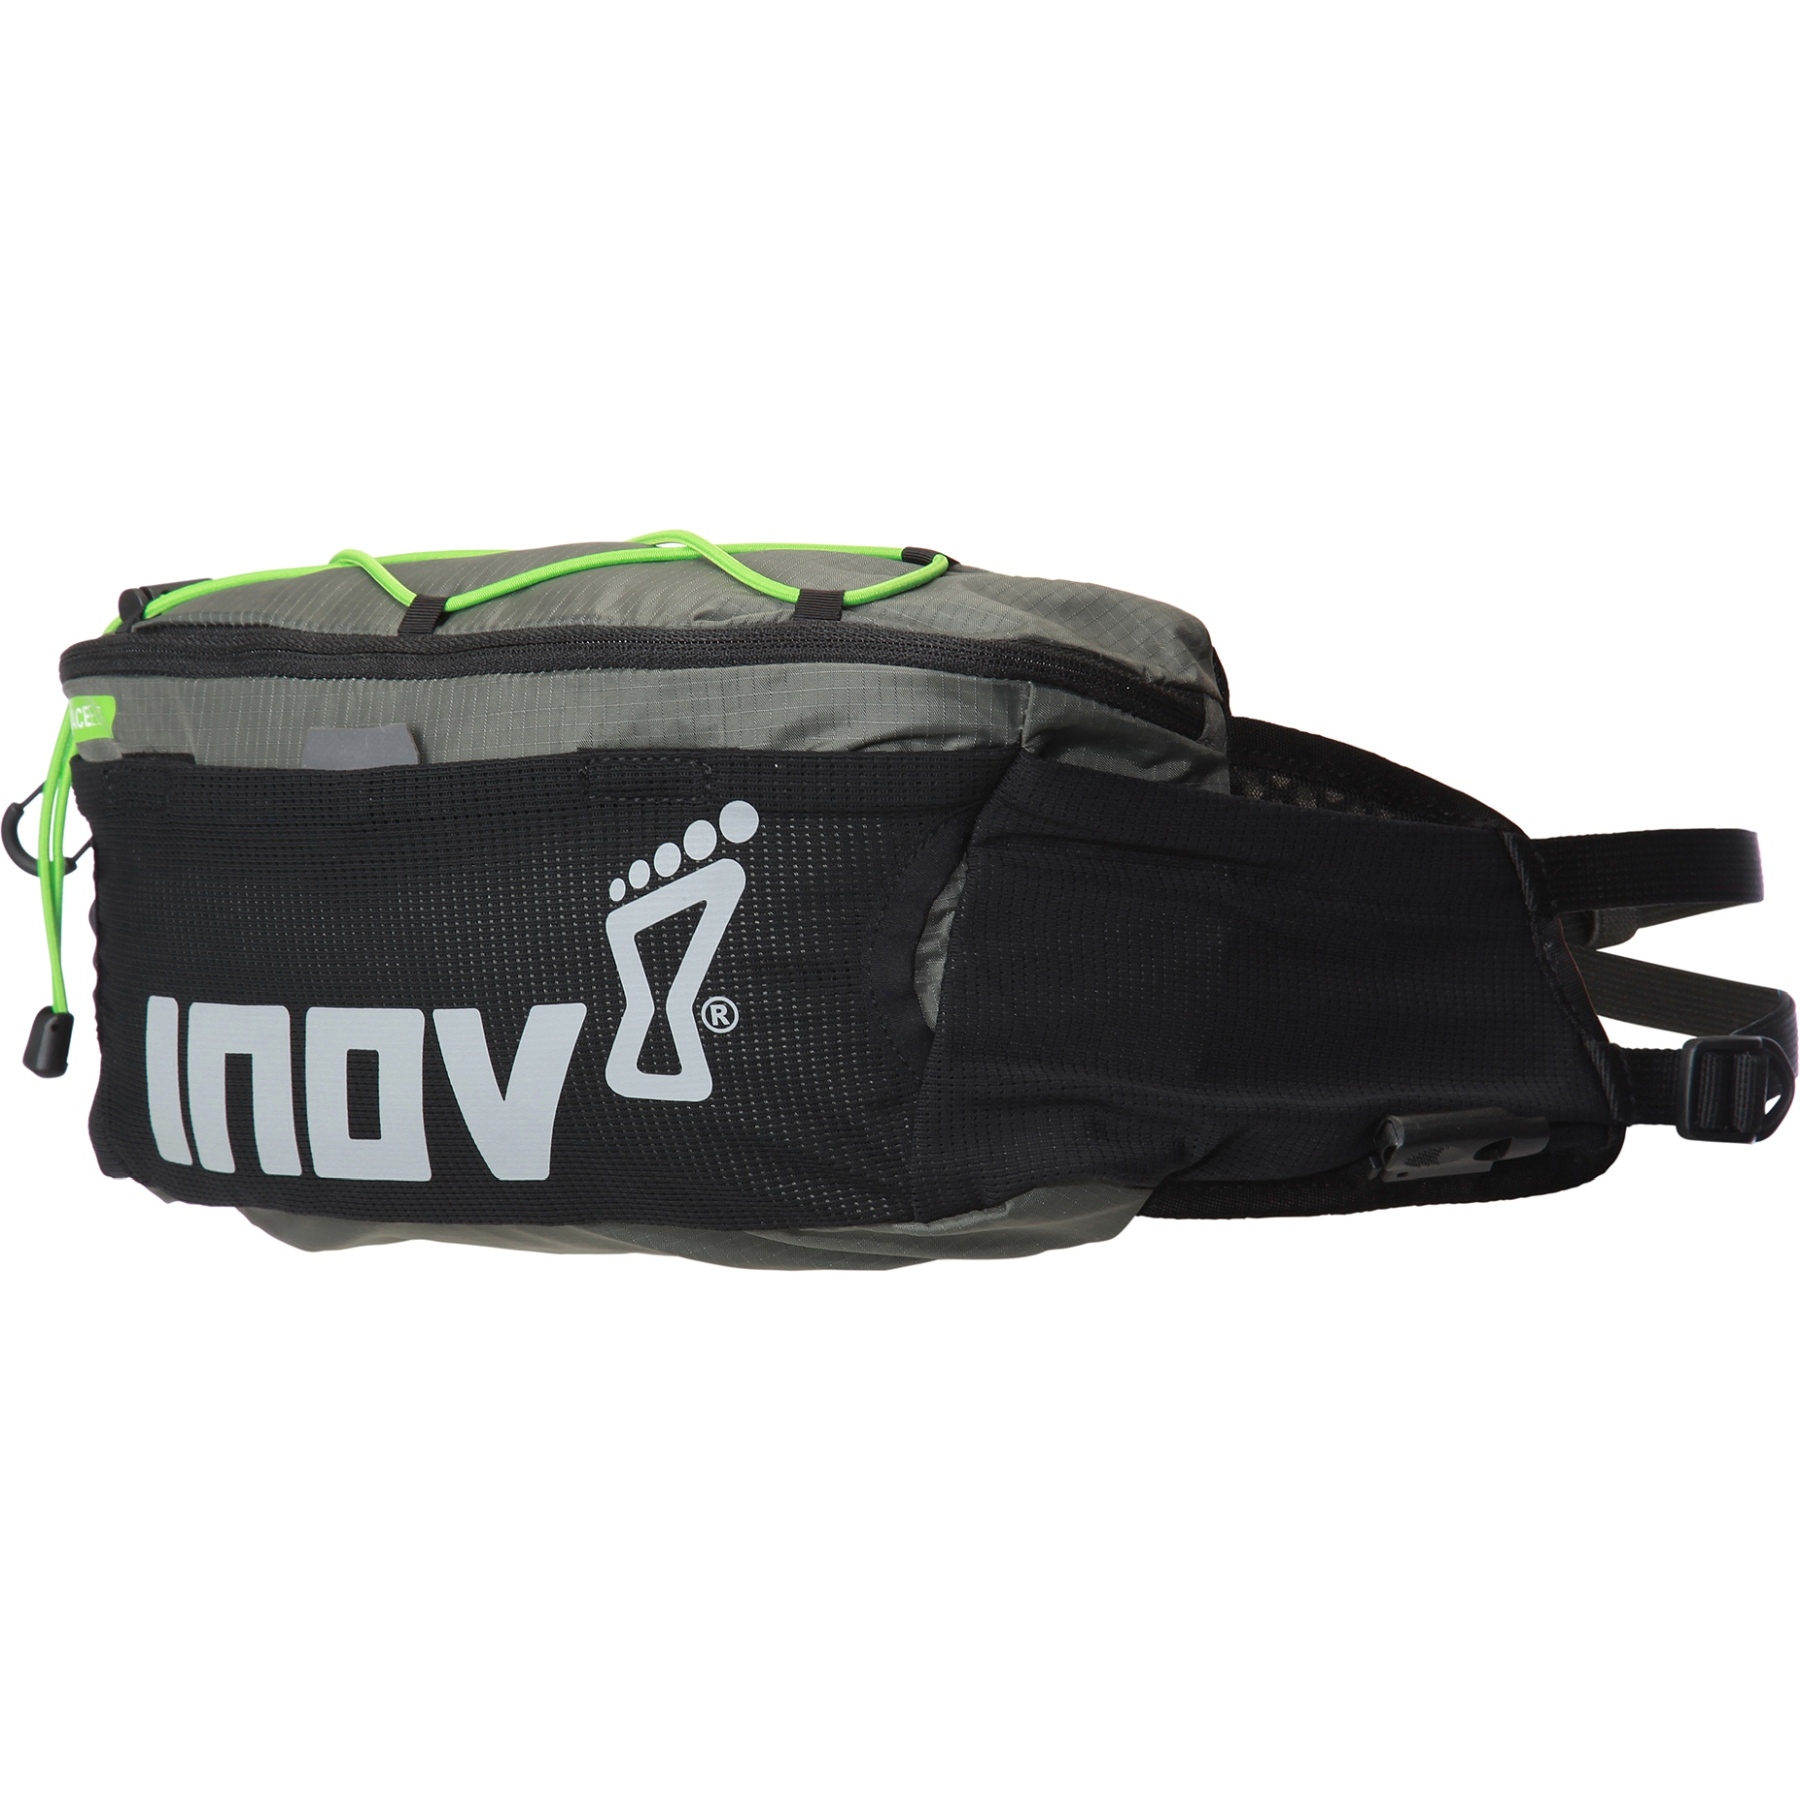 Produktbild von Inov-8 Race Elite Hüfttasche - schwarz/grau